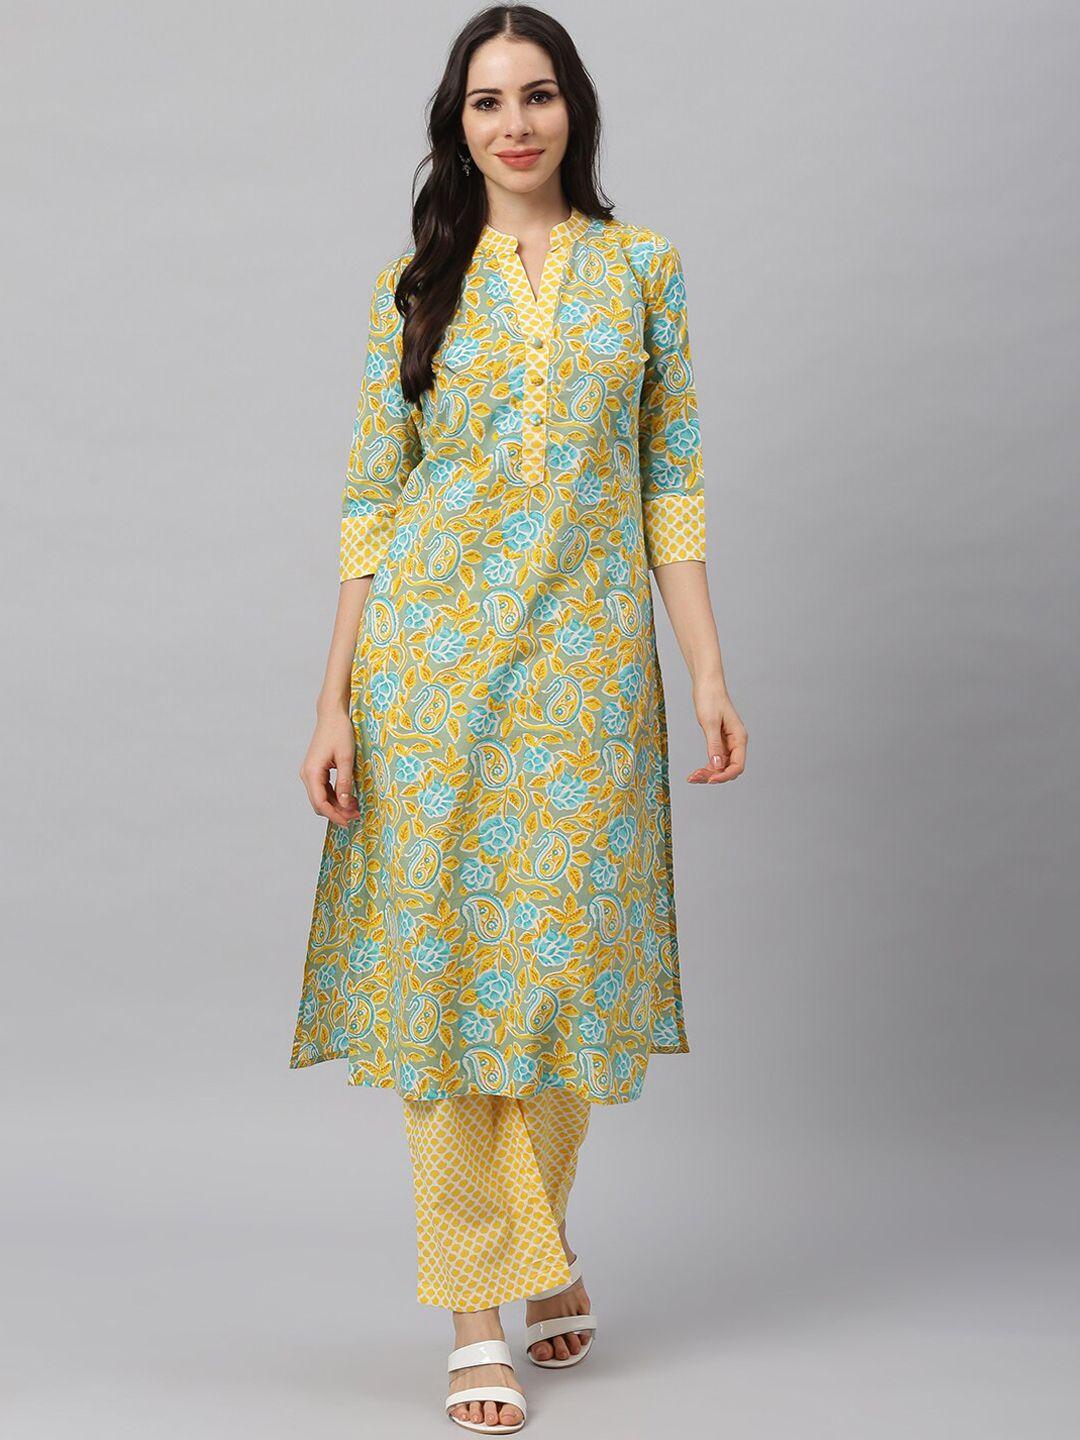 idalia women yellow & blue ethnic motifs printed pure cotton kurta with palazzos